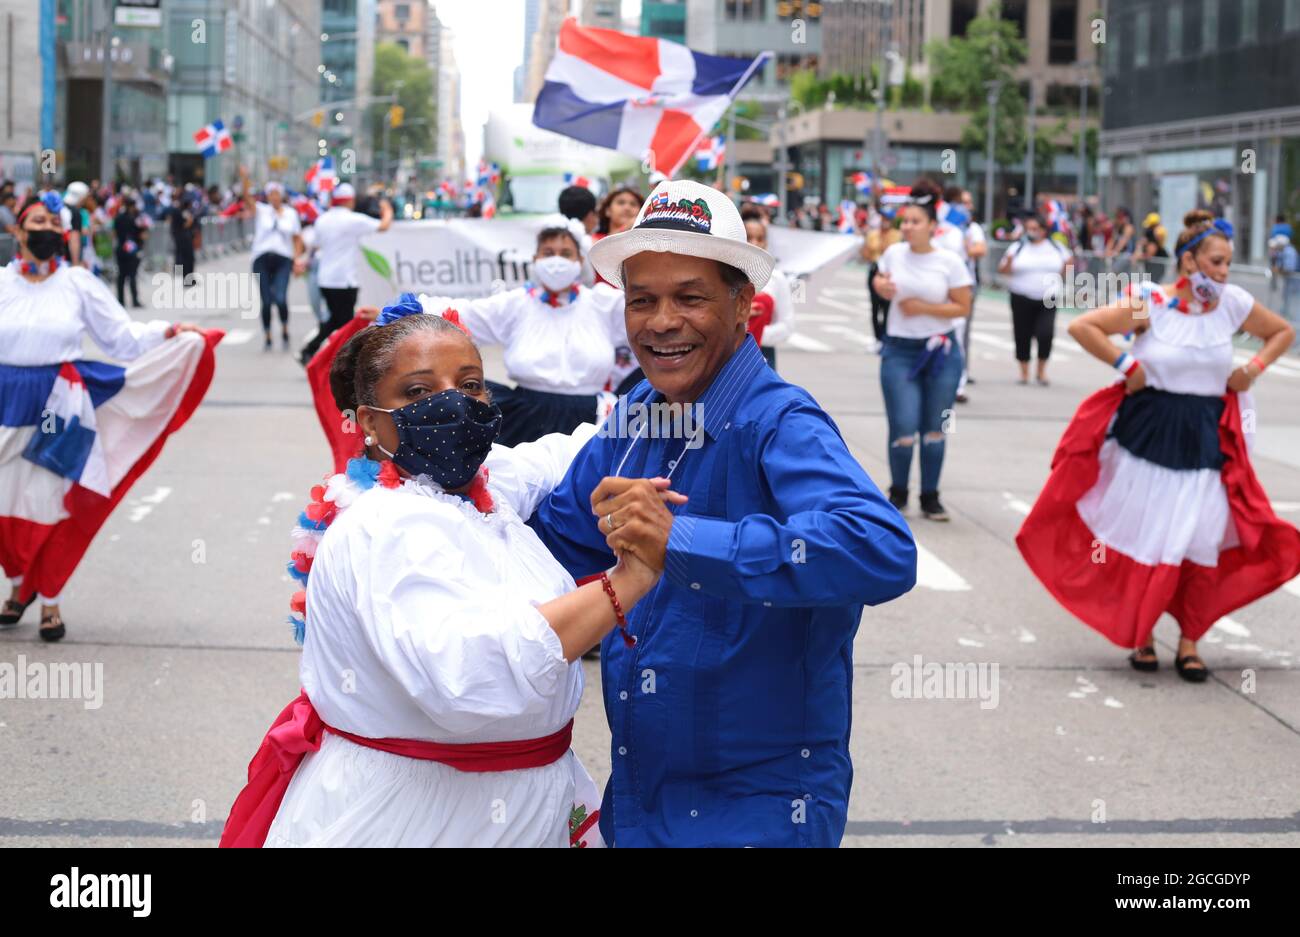 Jährliche Parade zum Puerto-ricanischen Tag in Manhattan, New York. Stockfoto